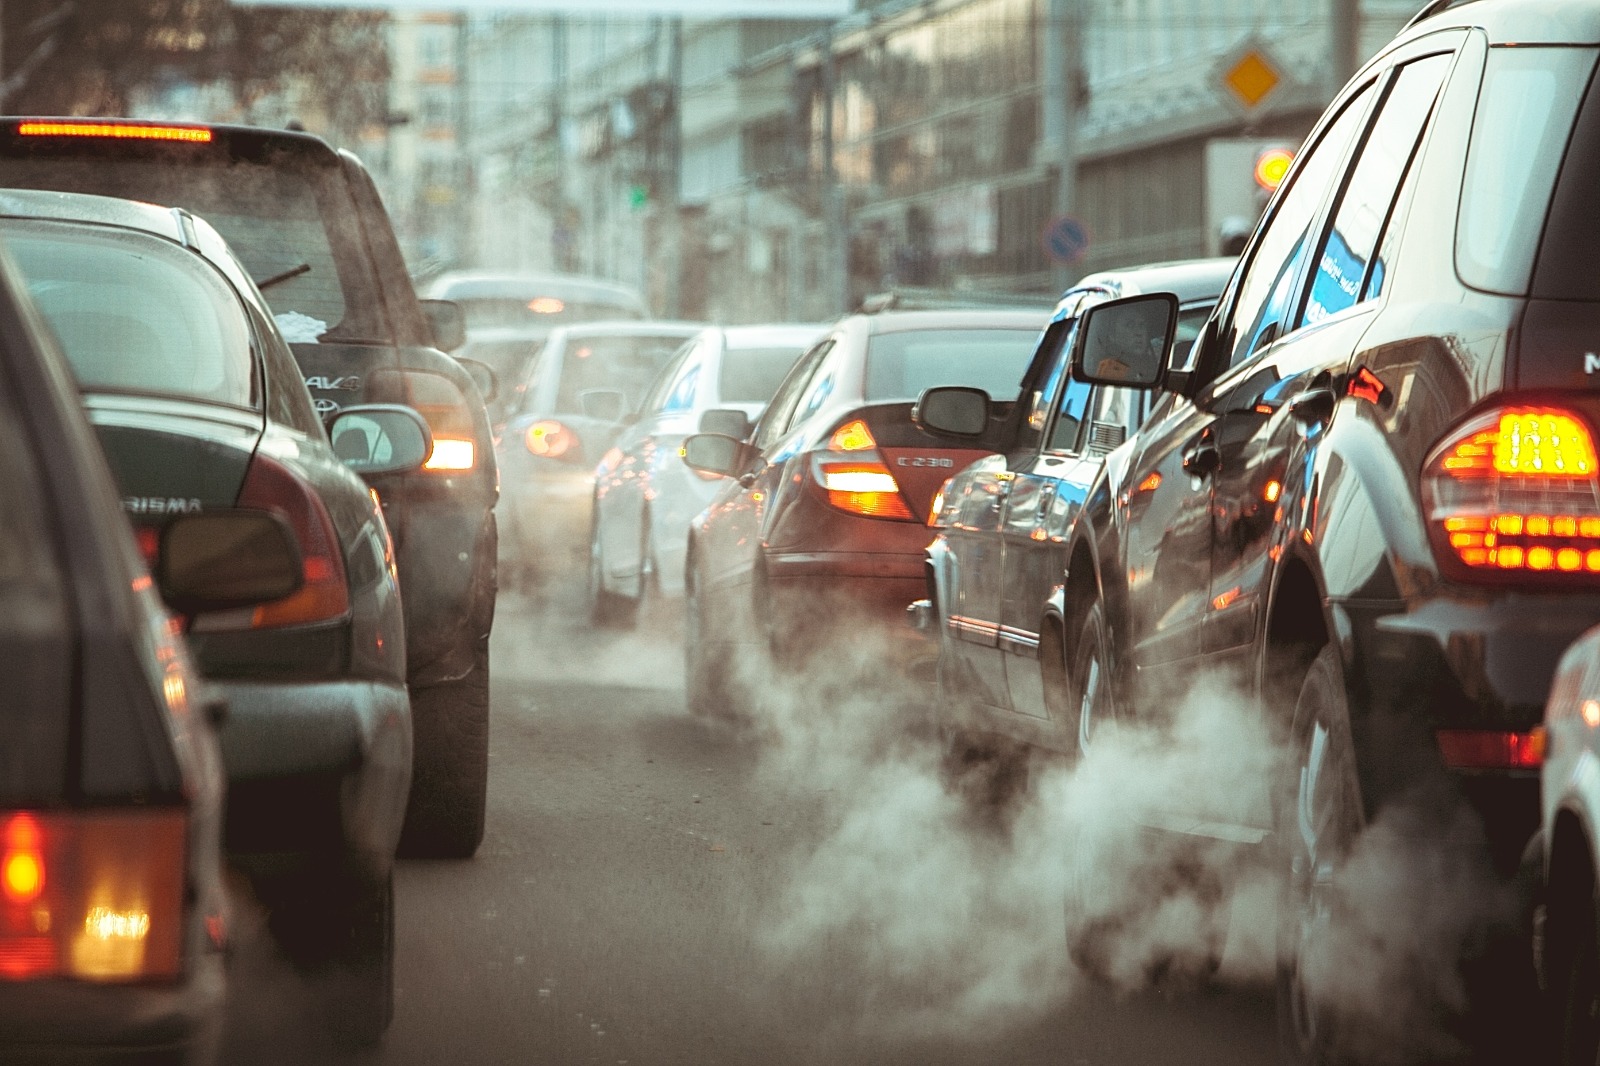 Densidade de tráfego e poluição. Trânsito intenso e carros em fila com fumaça do escapamento remetendo poluição